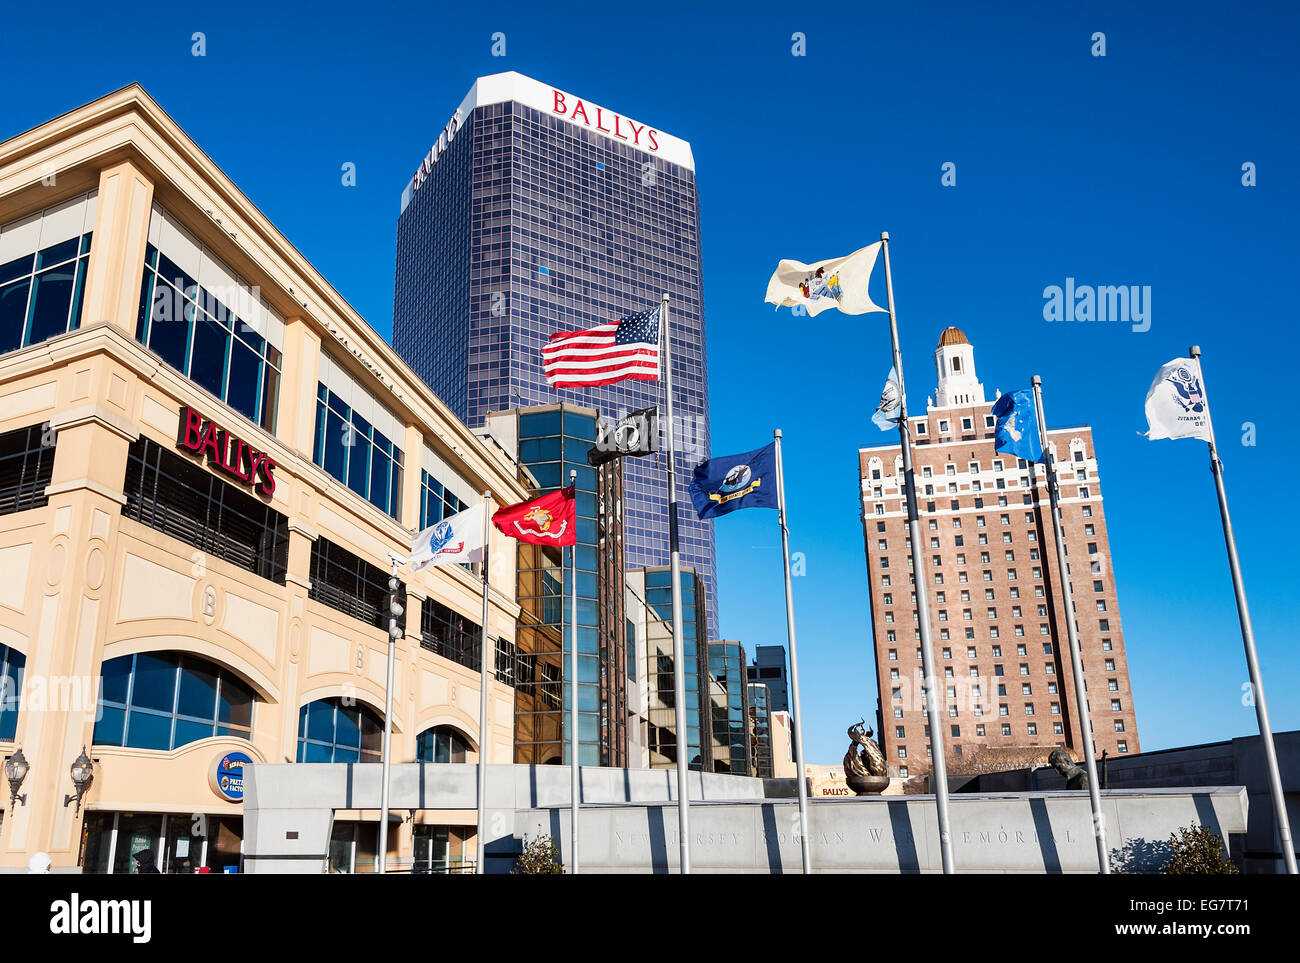 Exterior of Bally's and Claridge casino, Atlantic City, New Jersey, USA Stock Photo